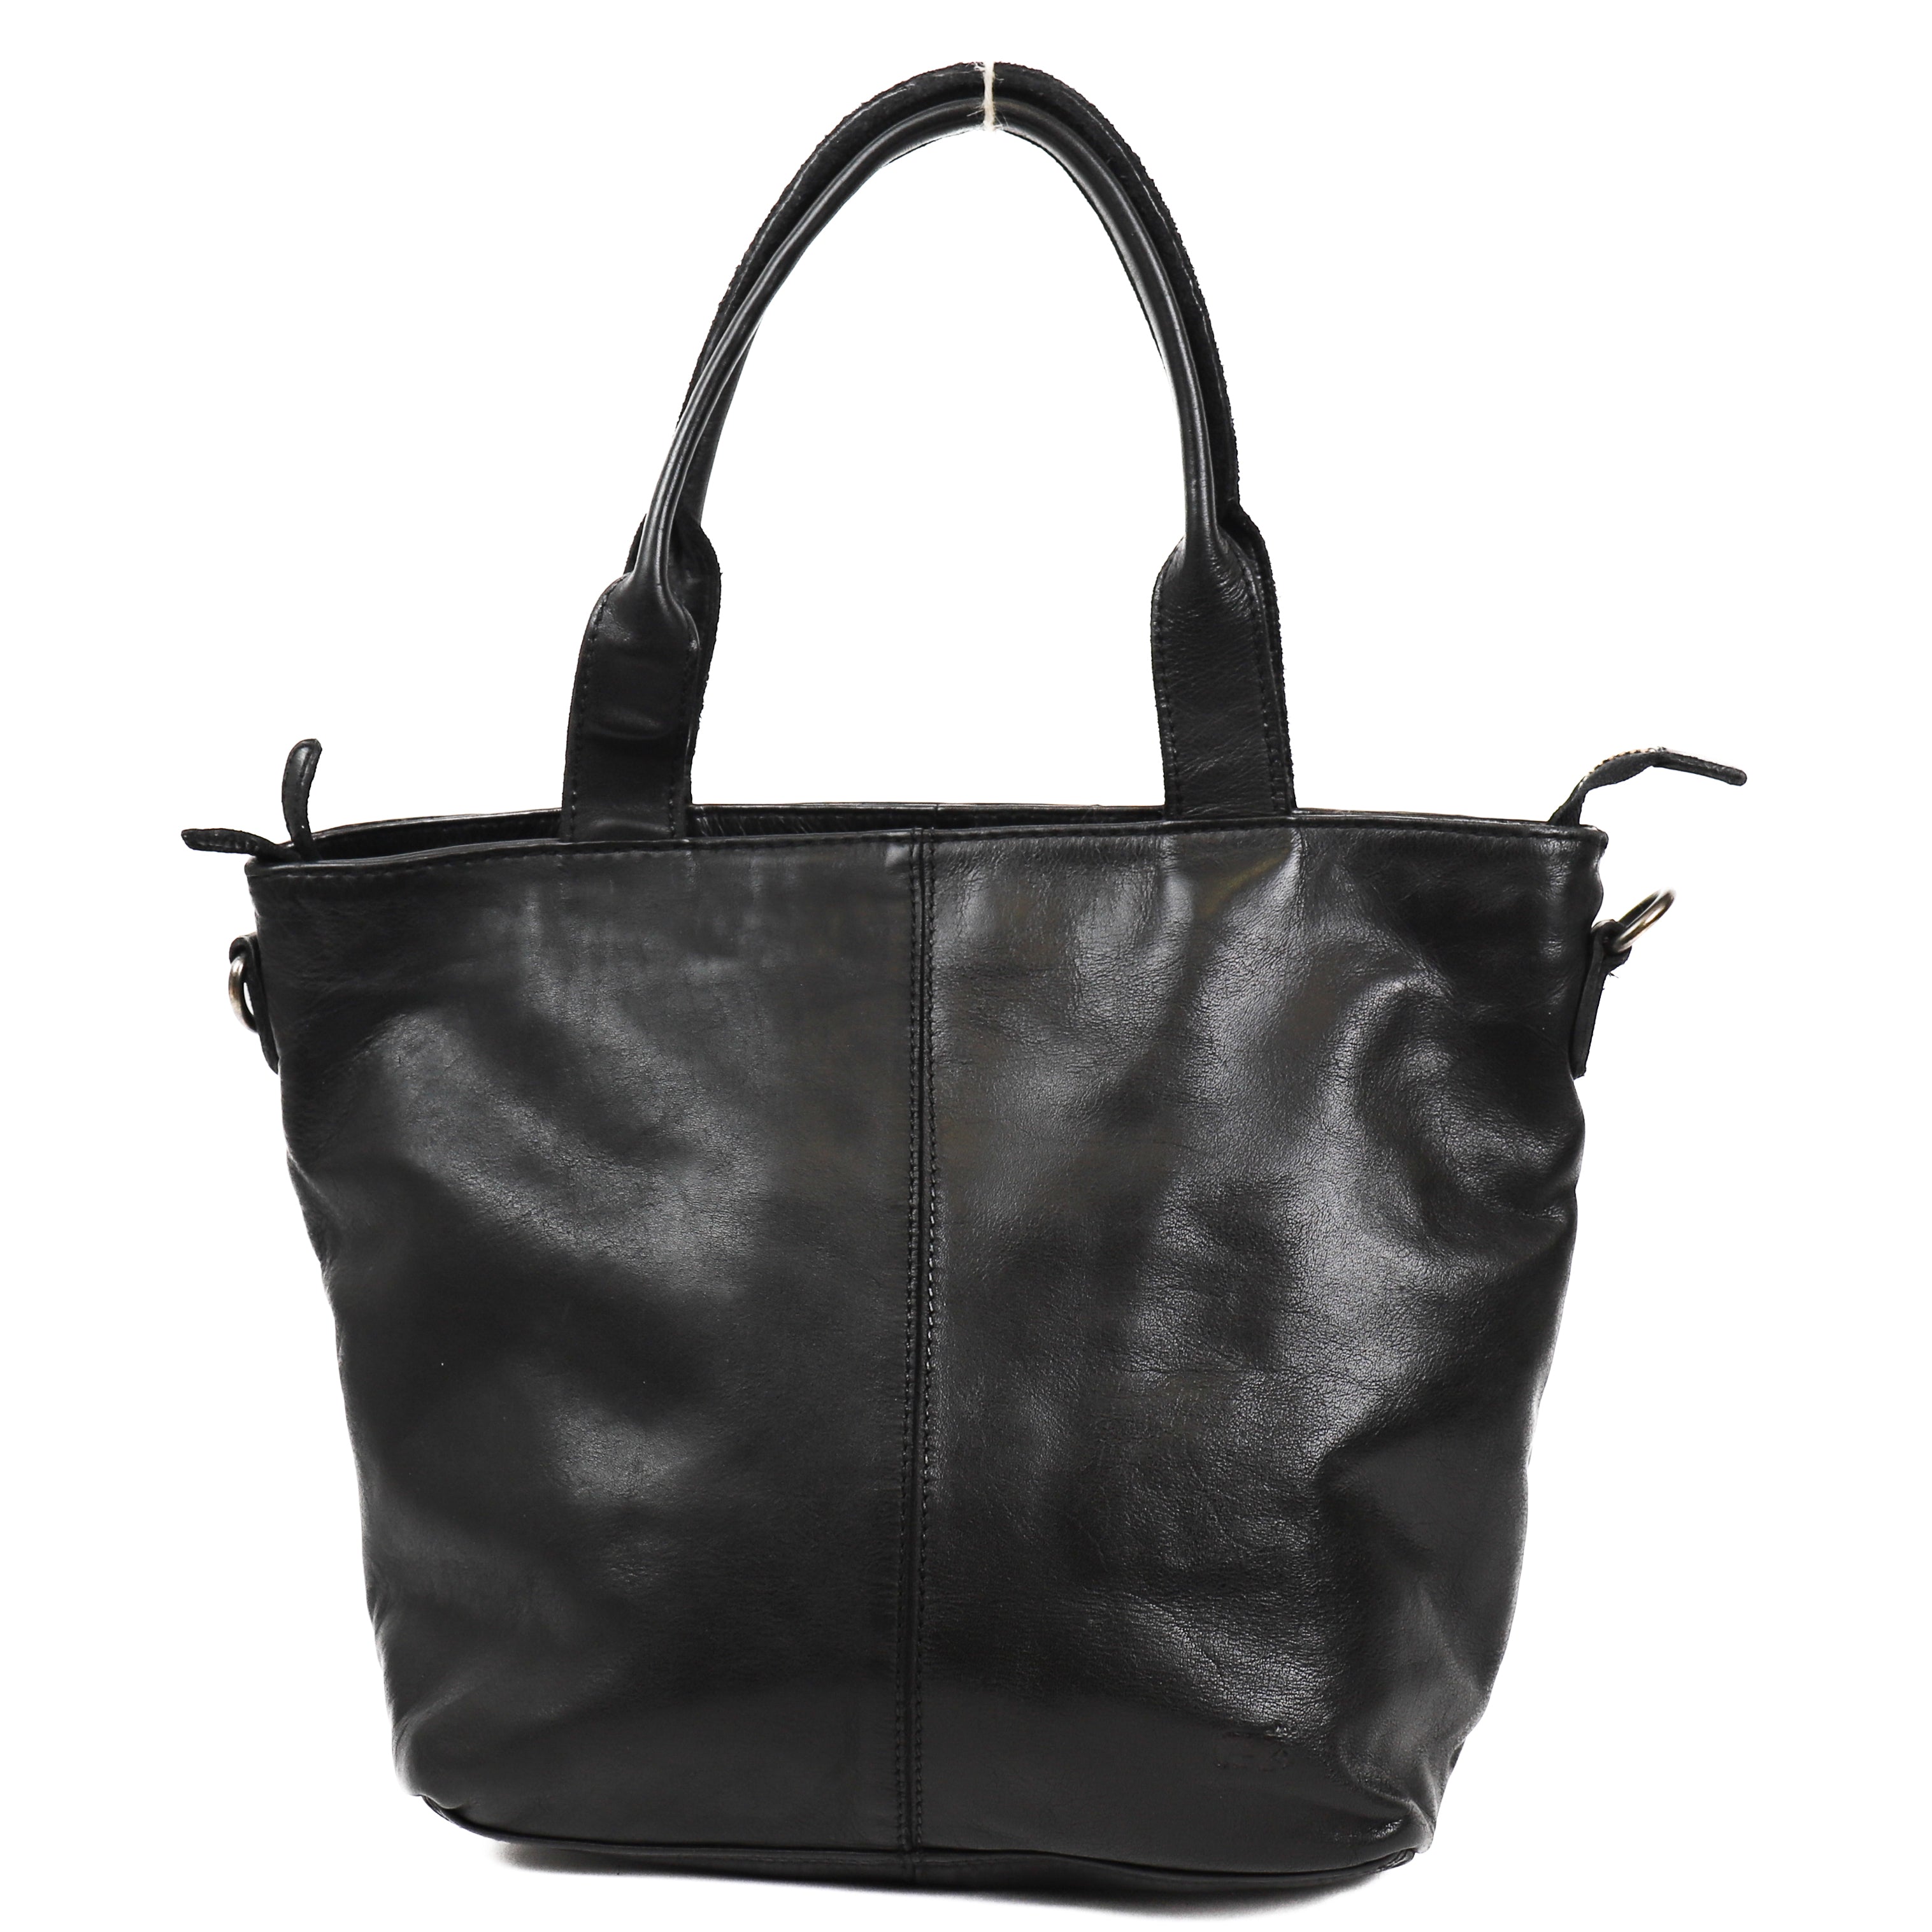 Hand/shoulder bag 'Manon' black